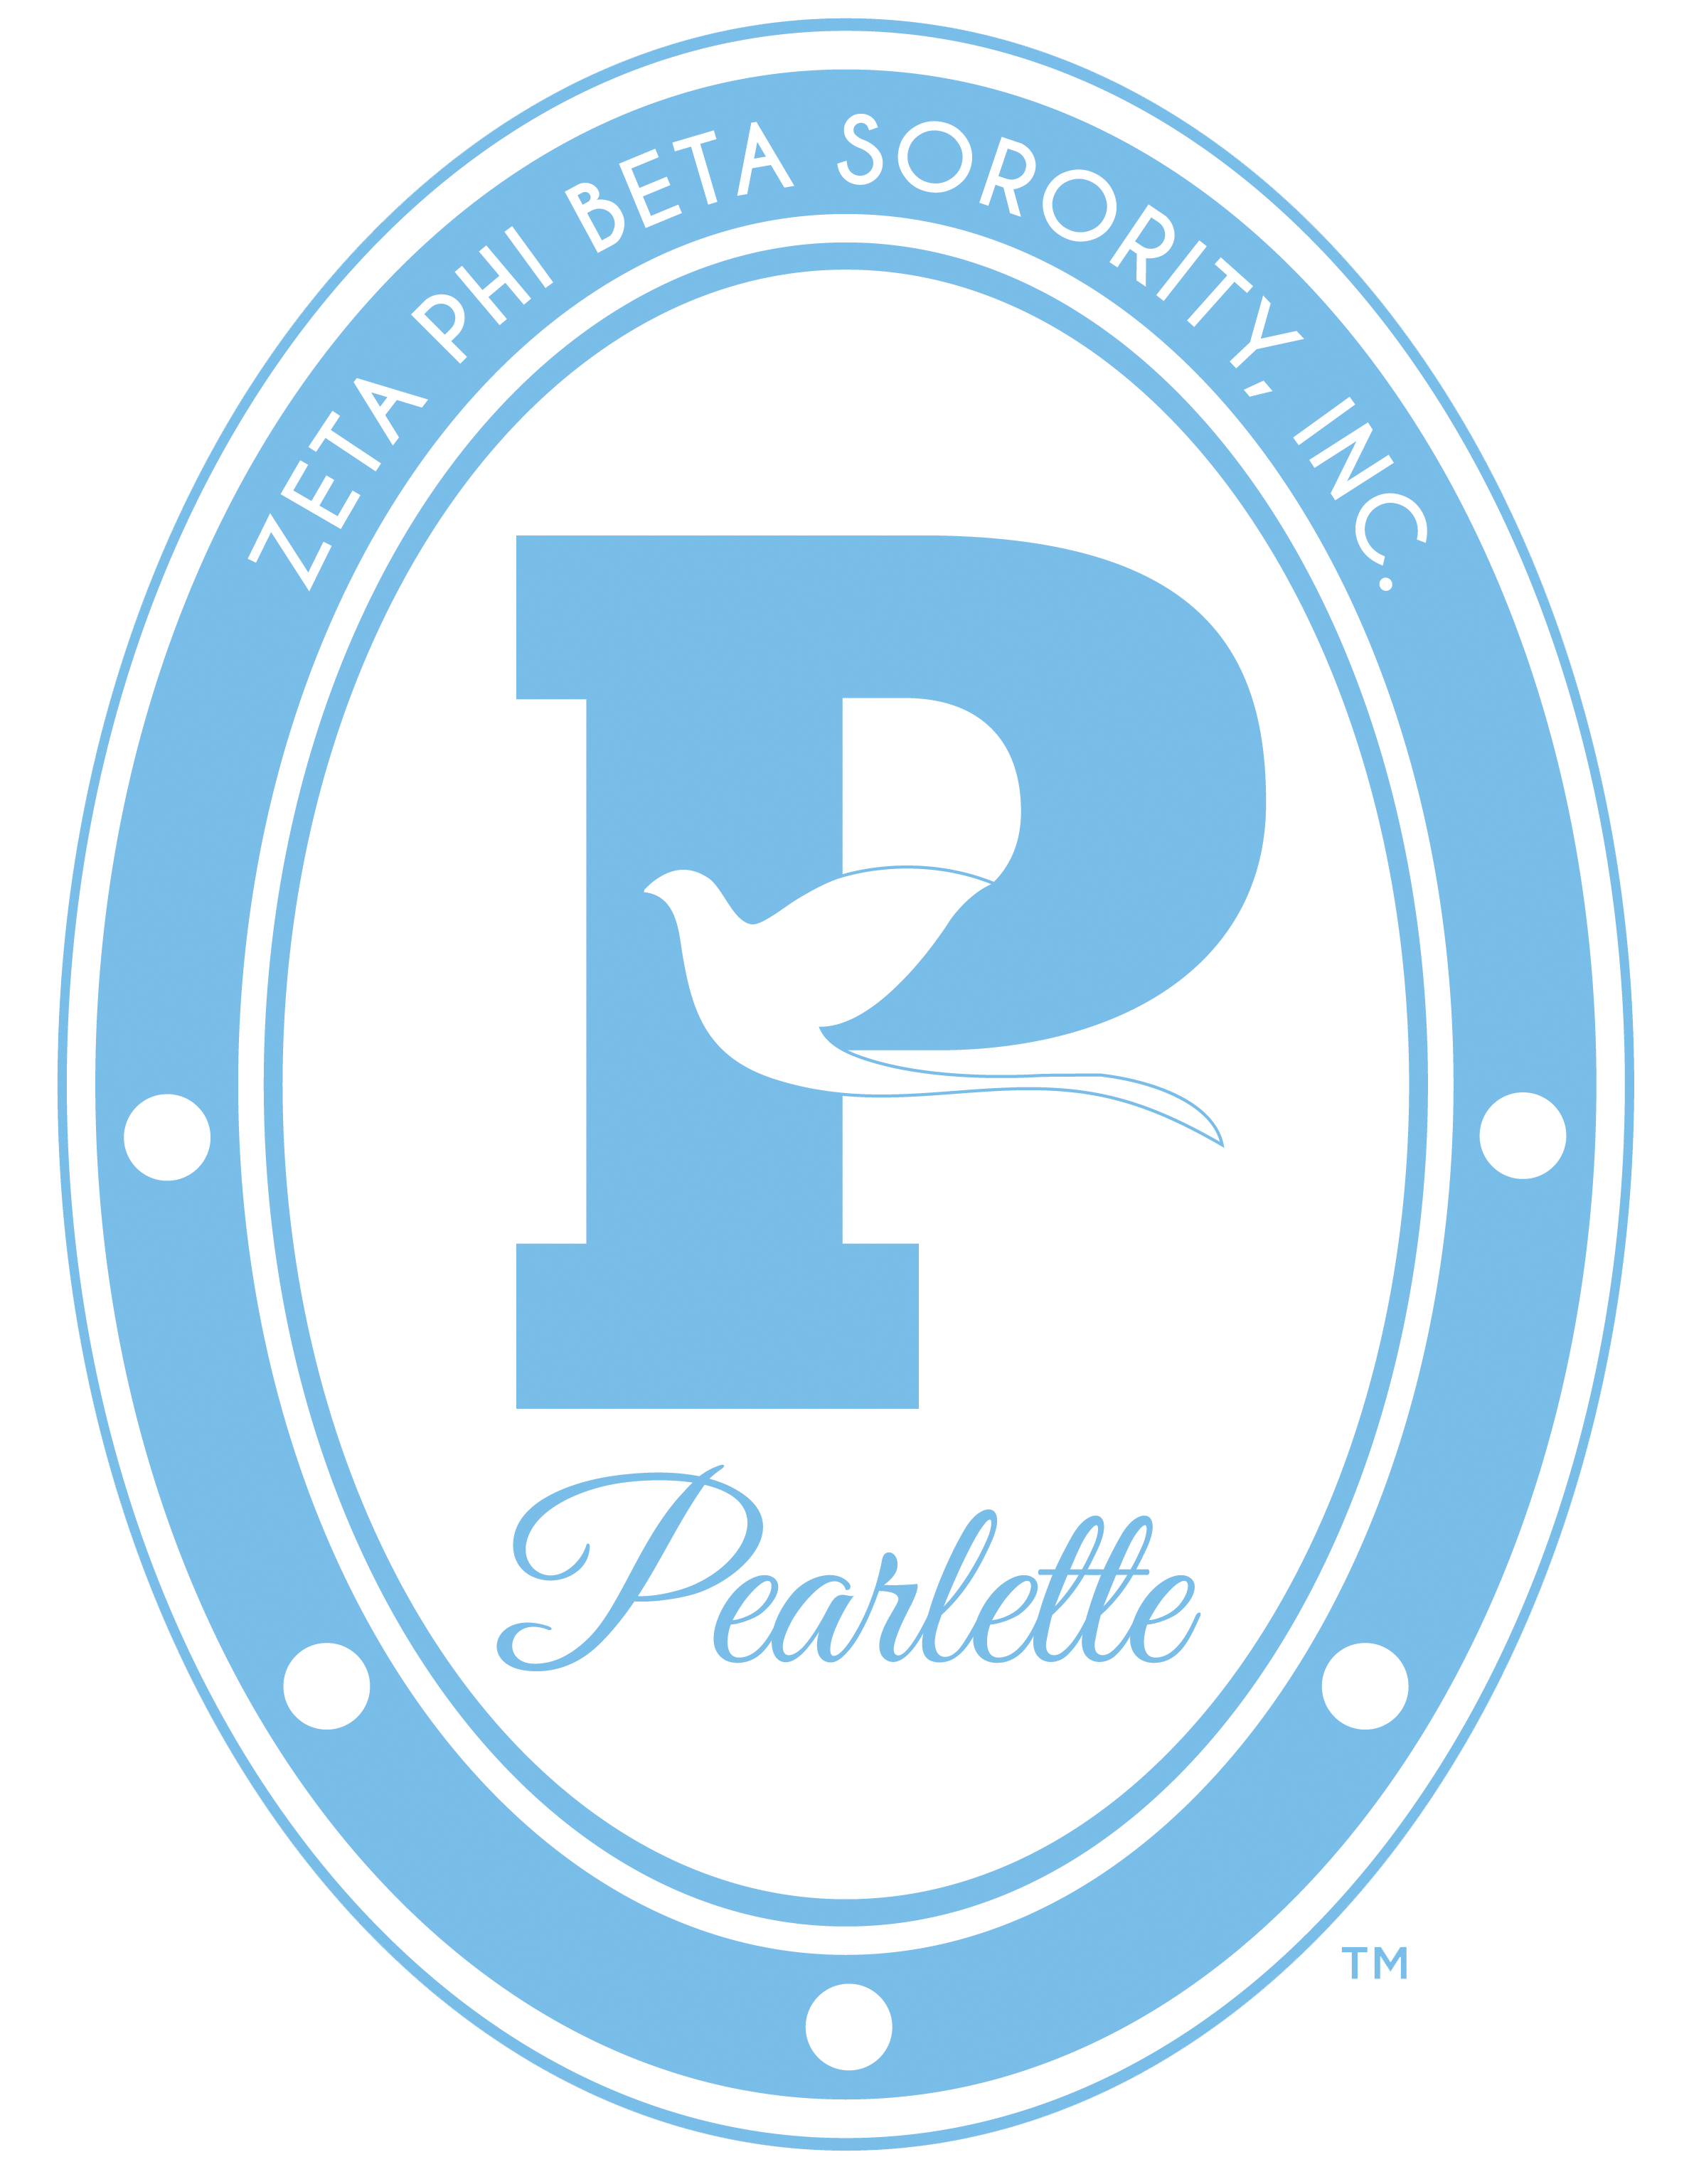 Pearlette shield